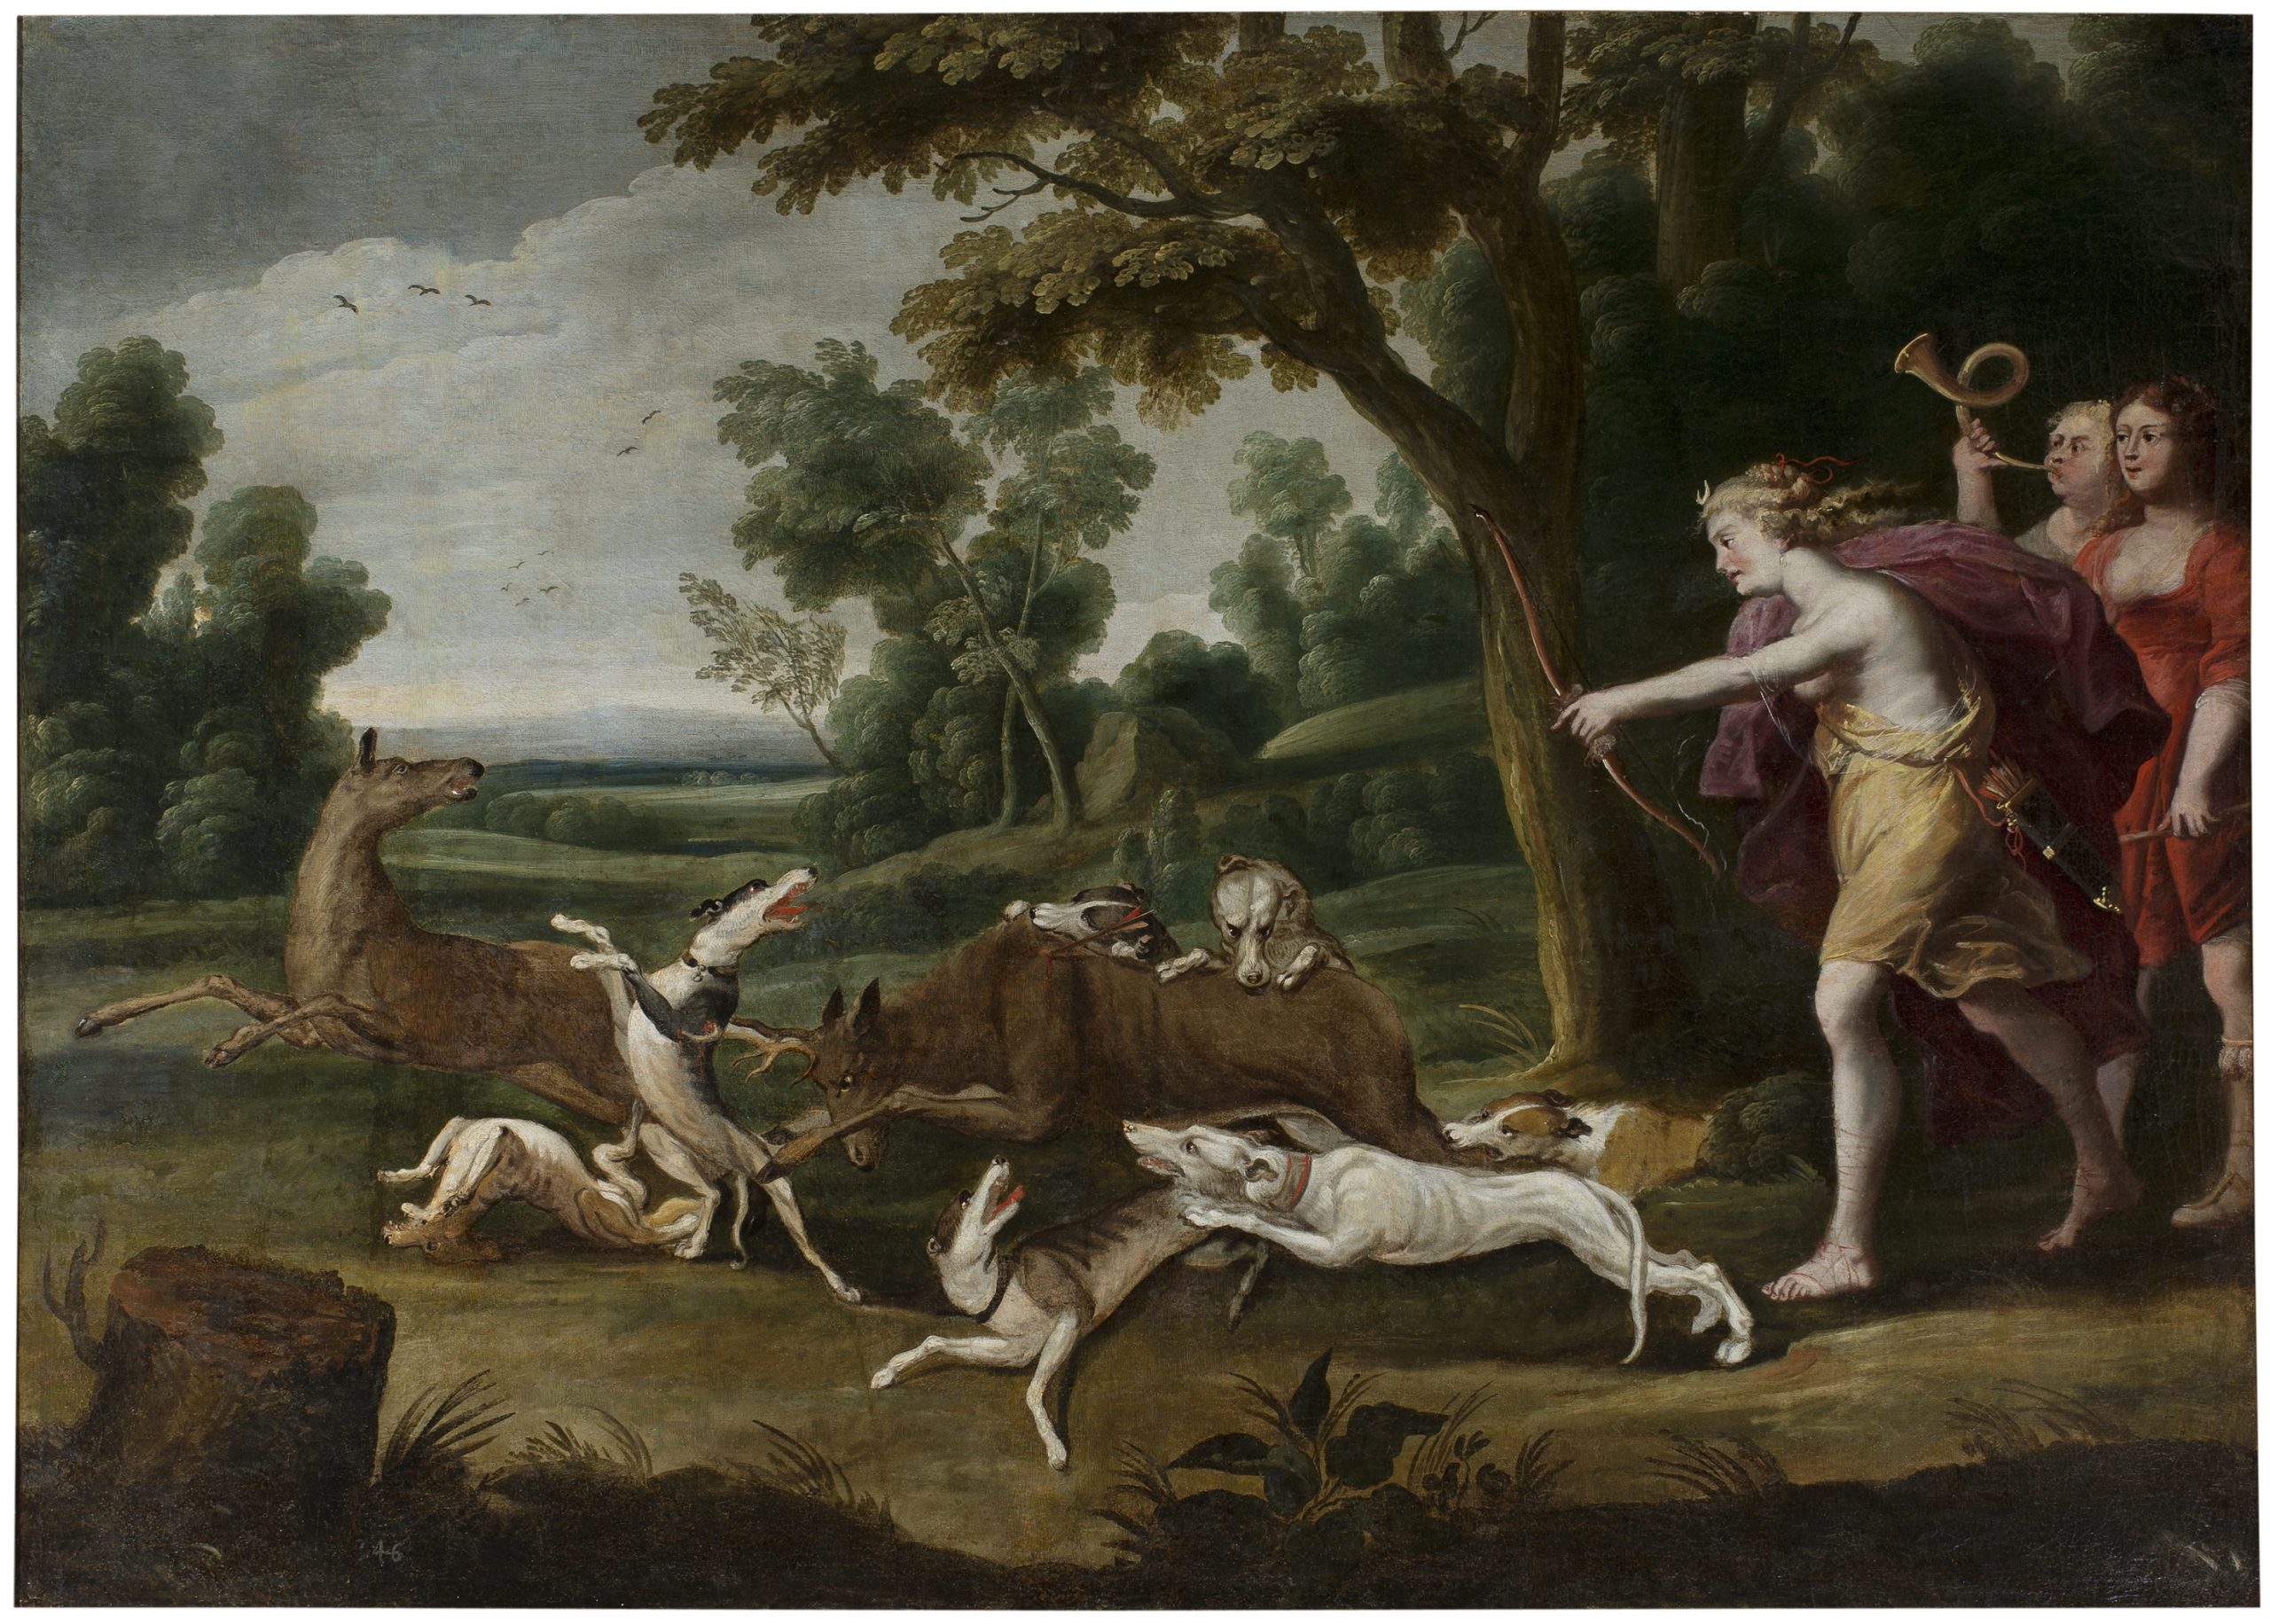 Diana caçant amb les seves nimfes